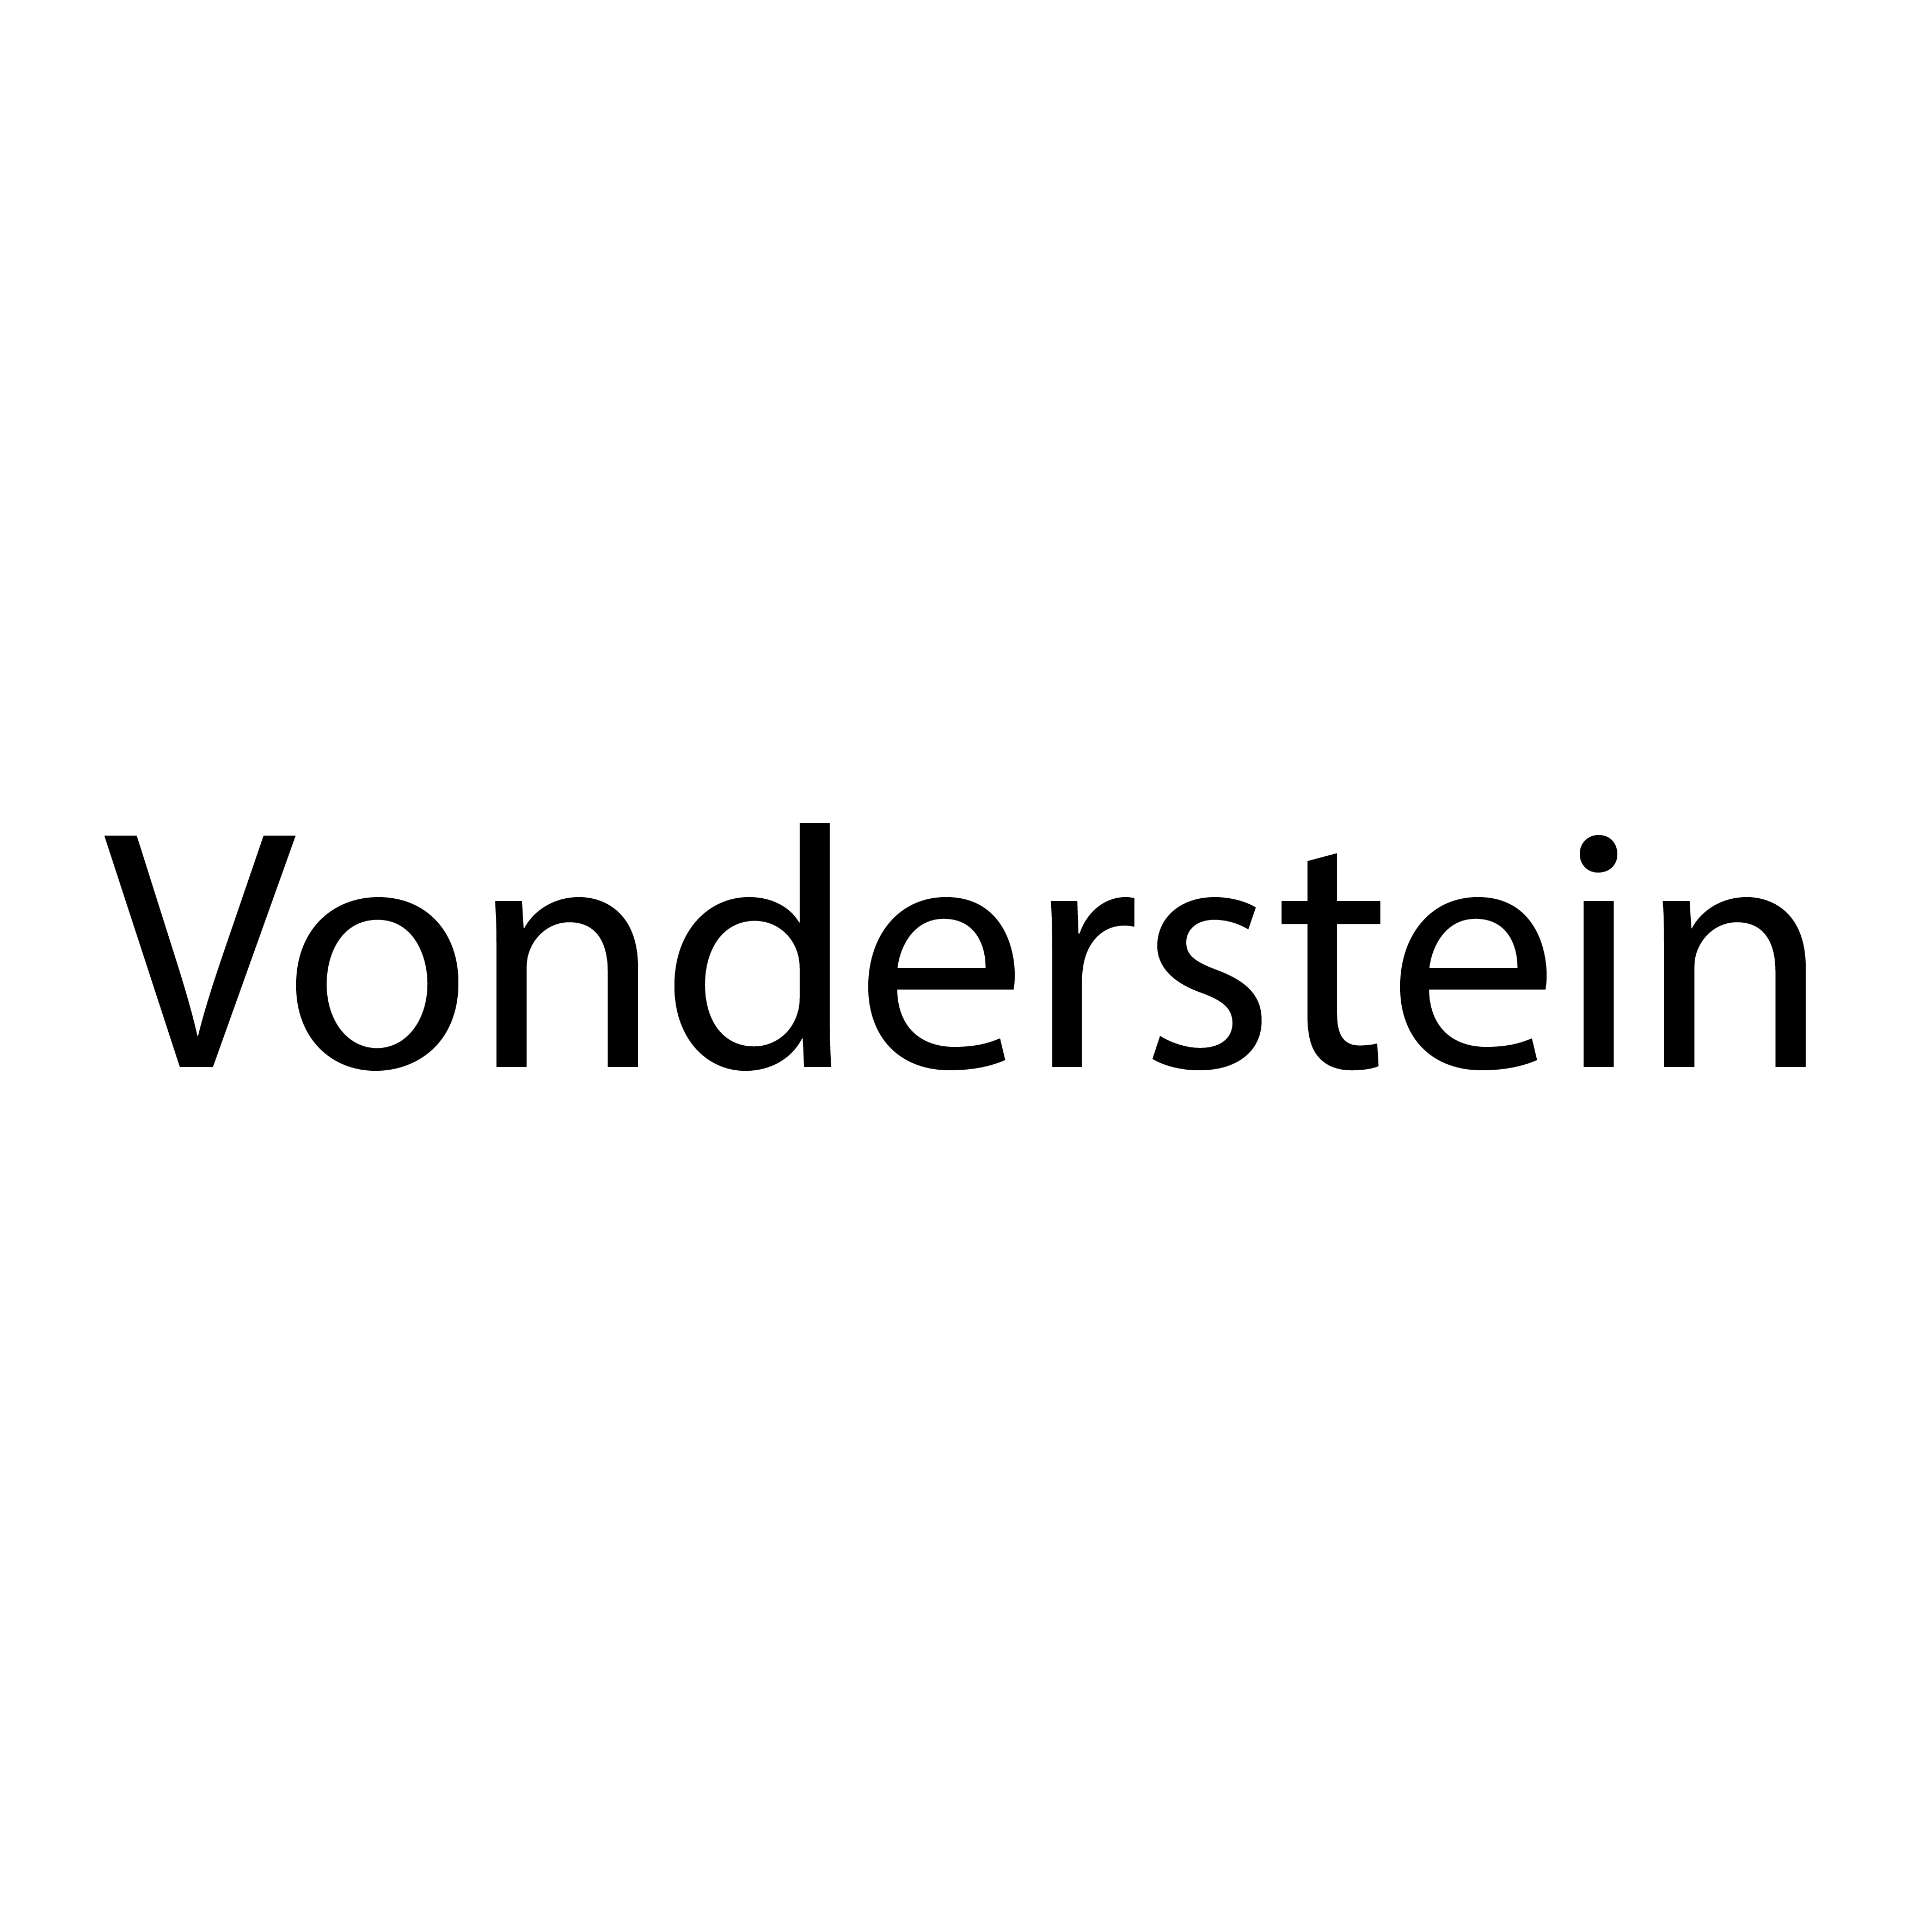 Vonderstein